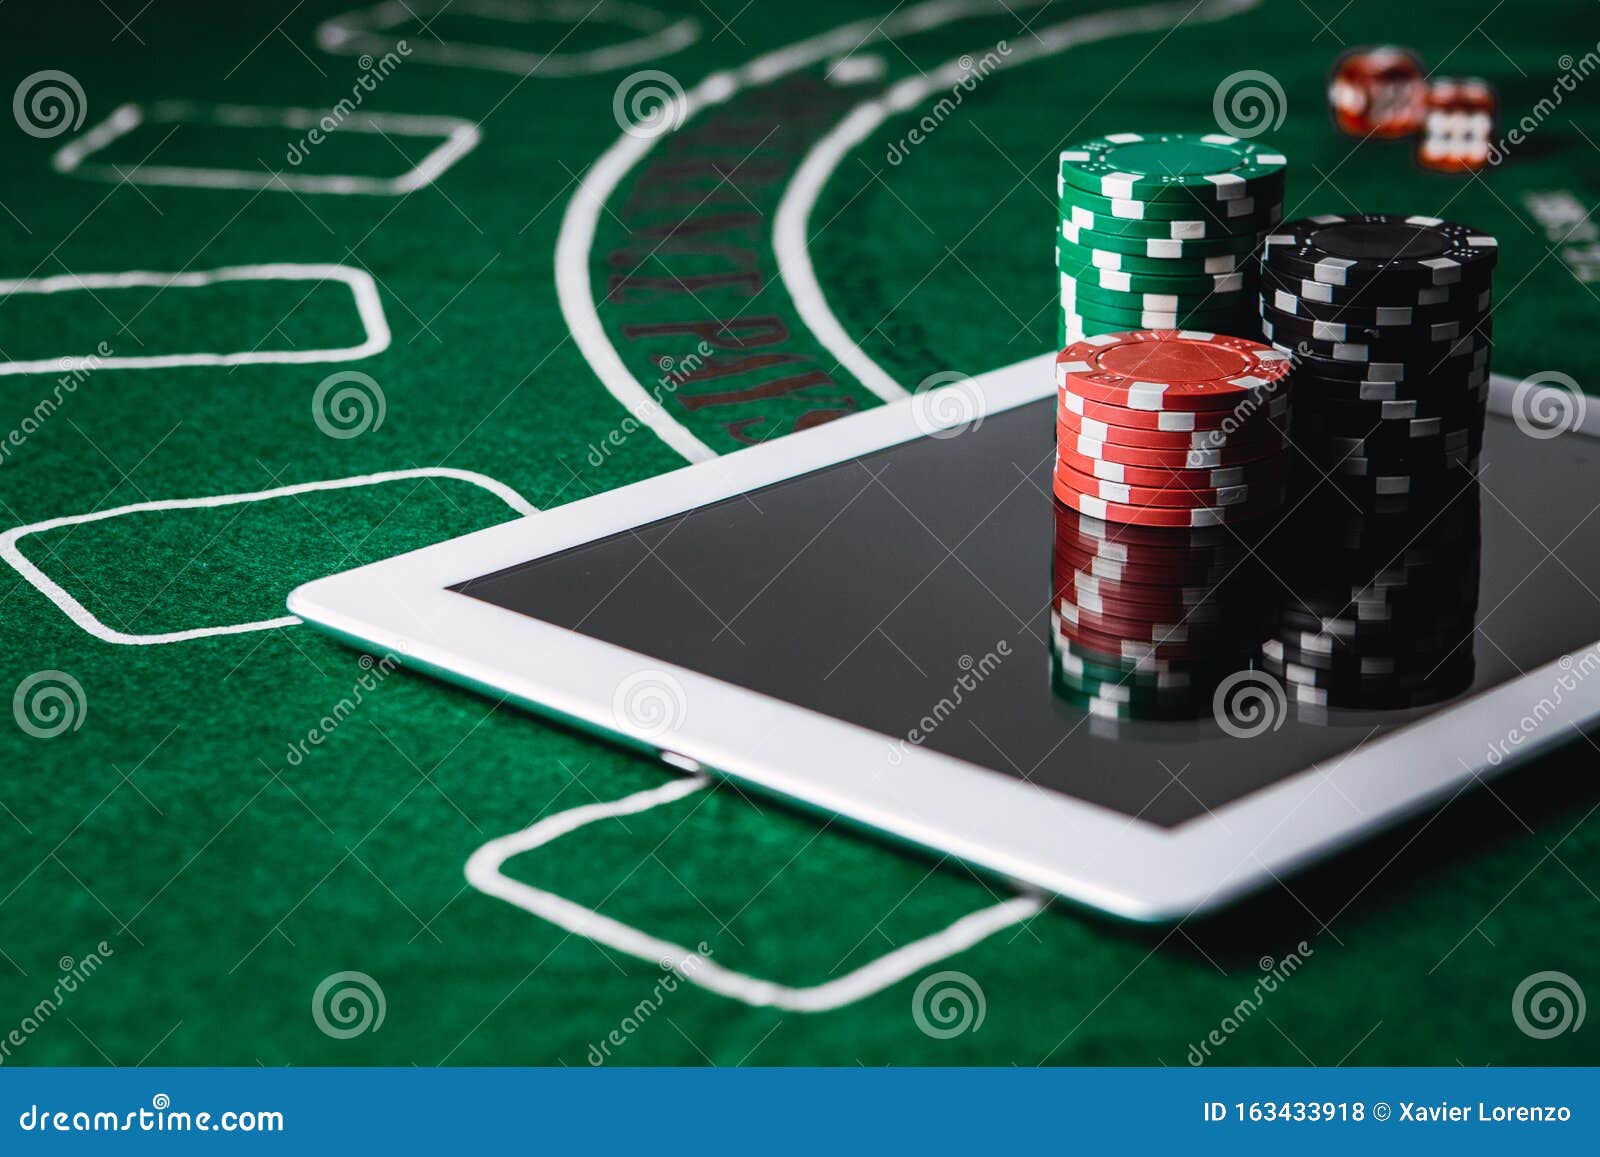 Ставка онлайн покер в крыму откроют казино